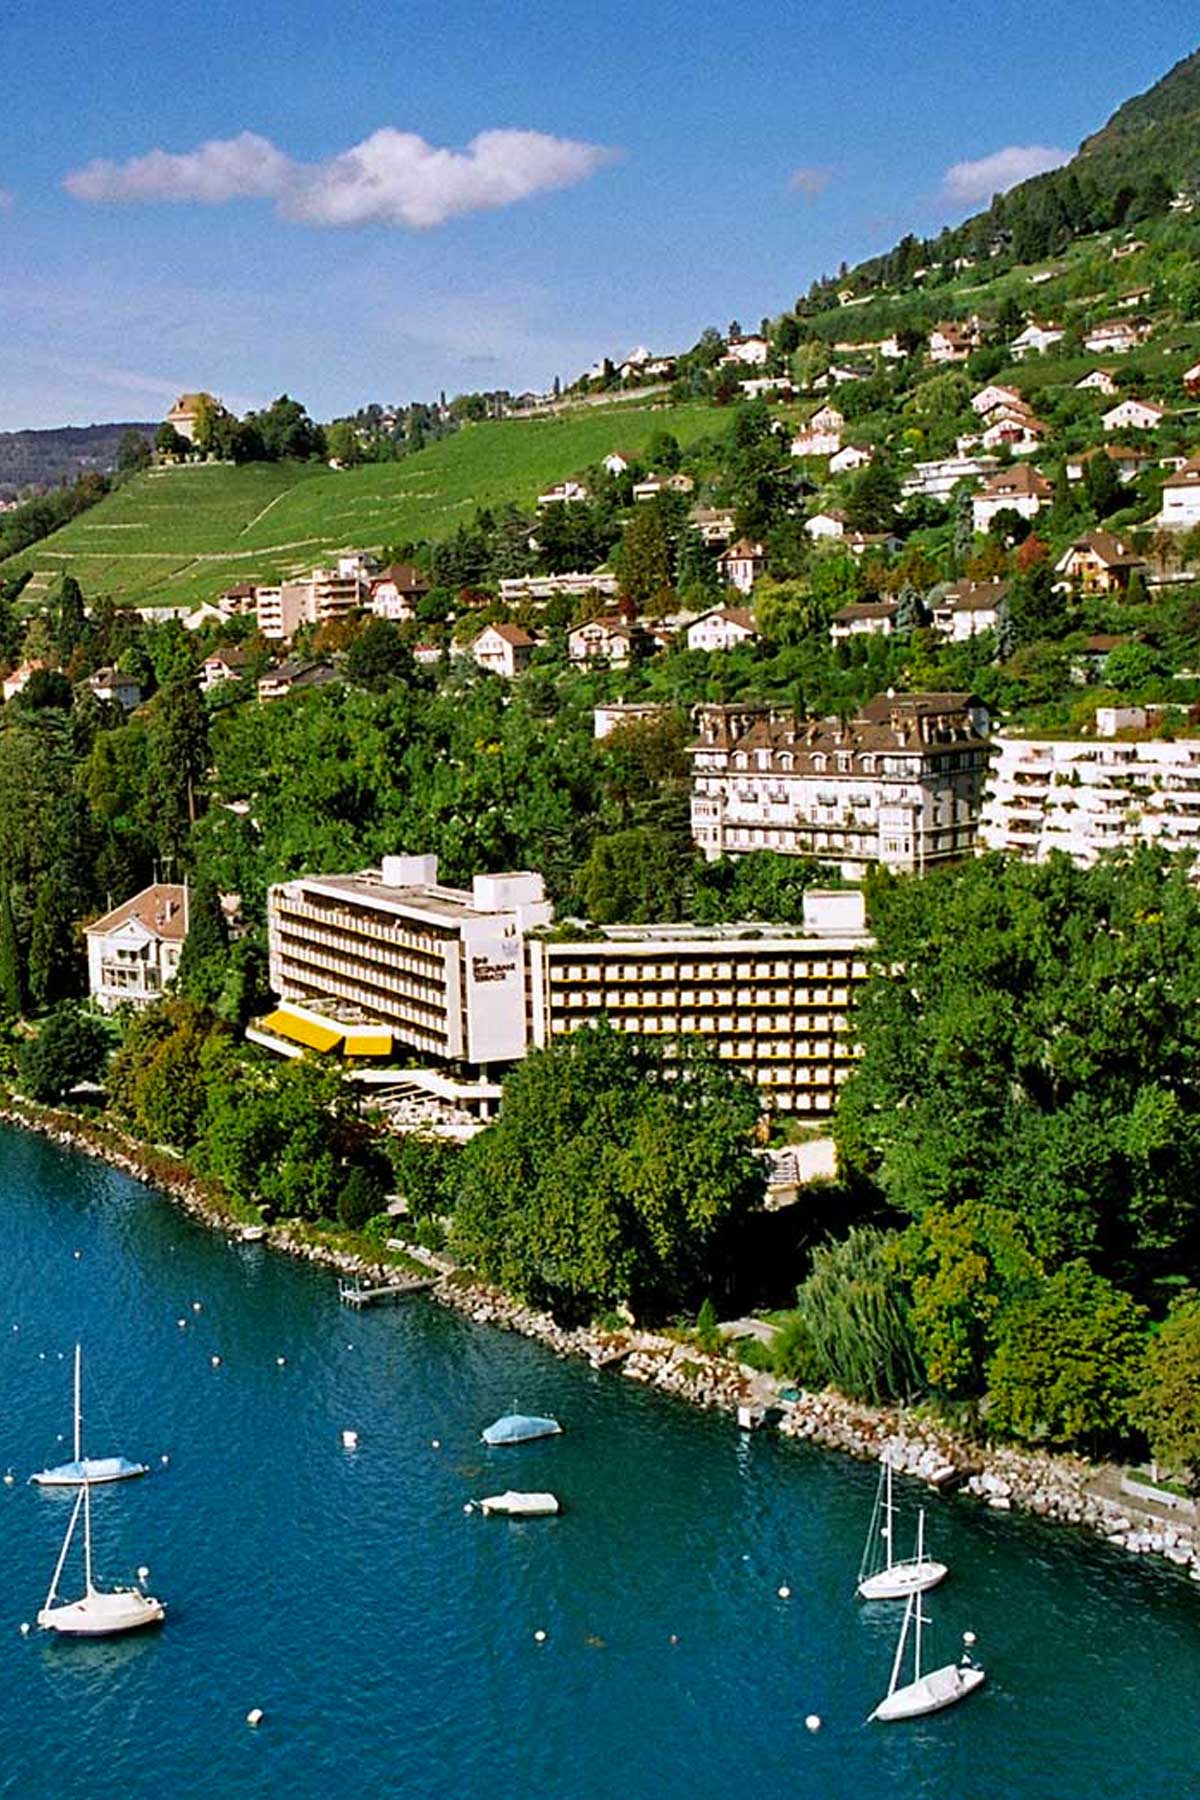 Maison de retraite médicalisé suisse montreux 